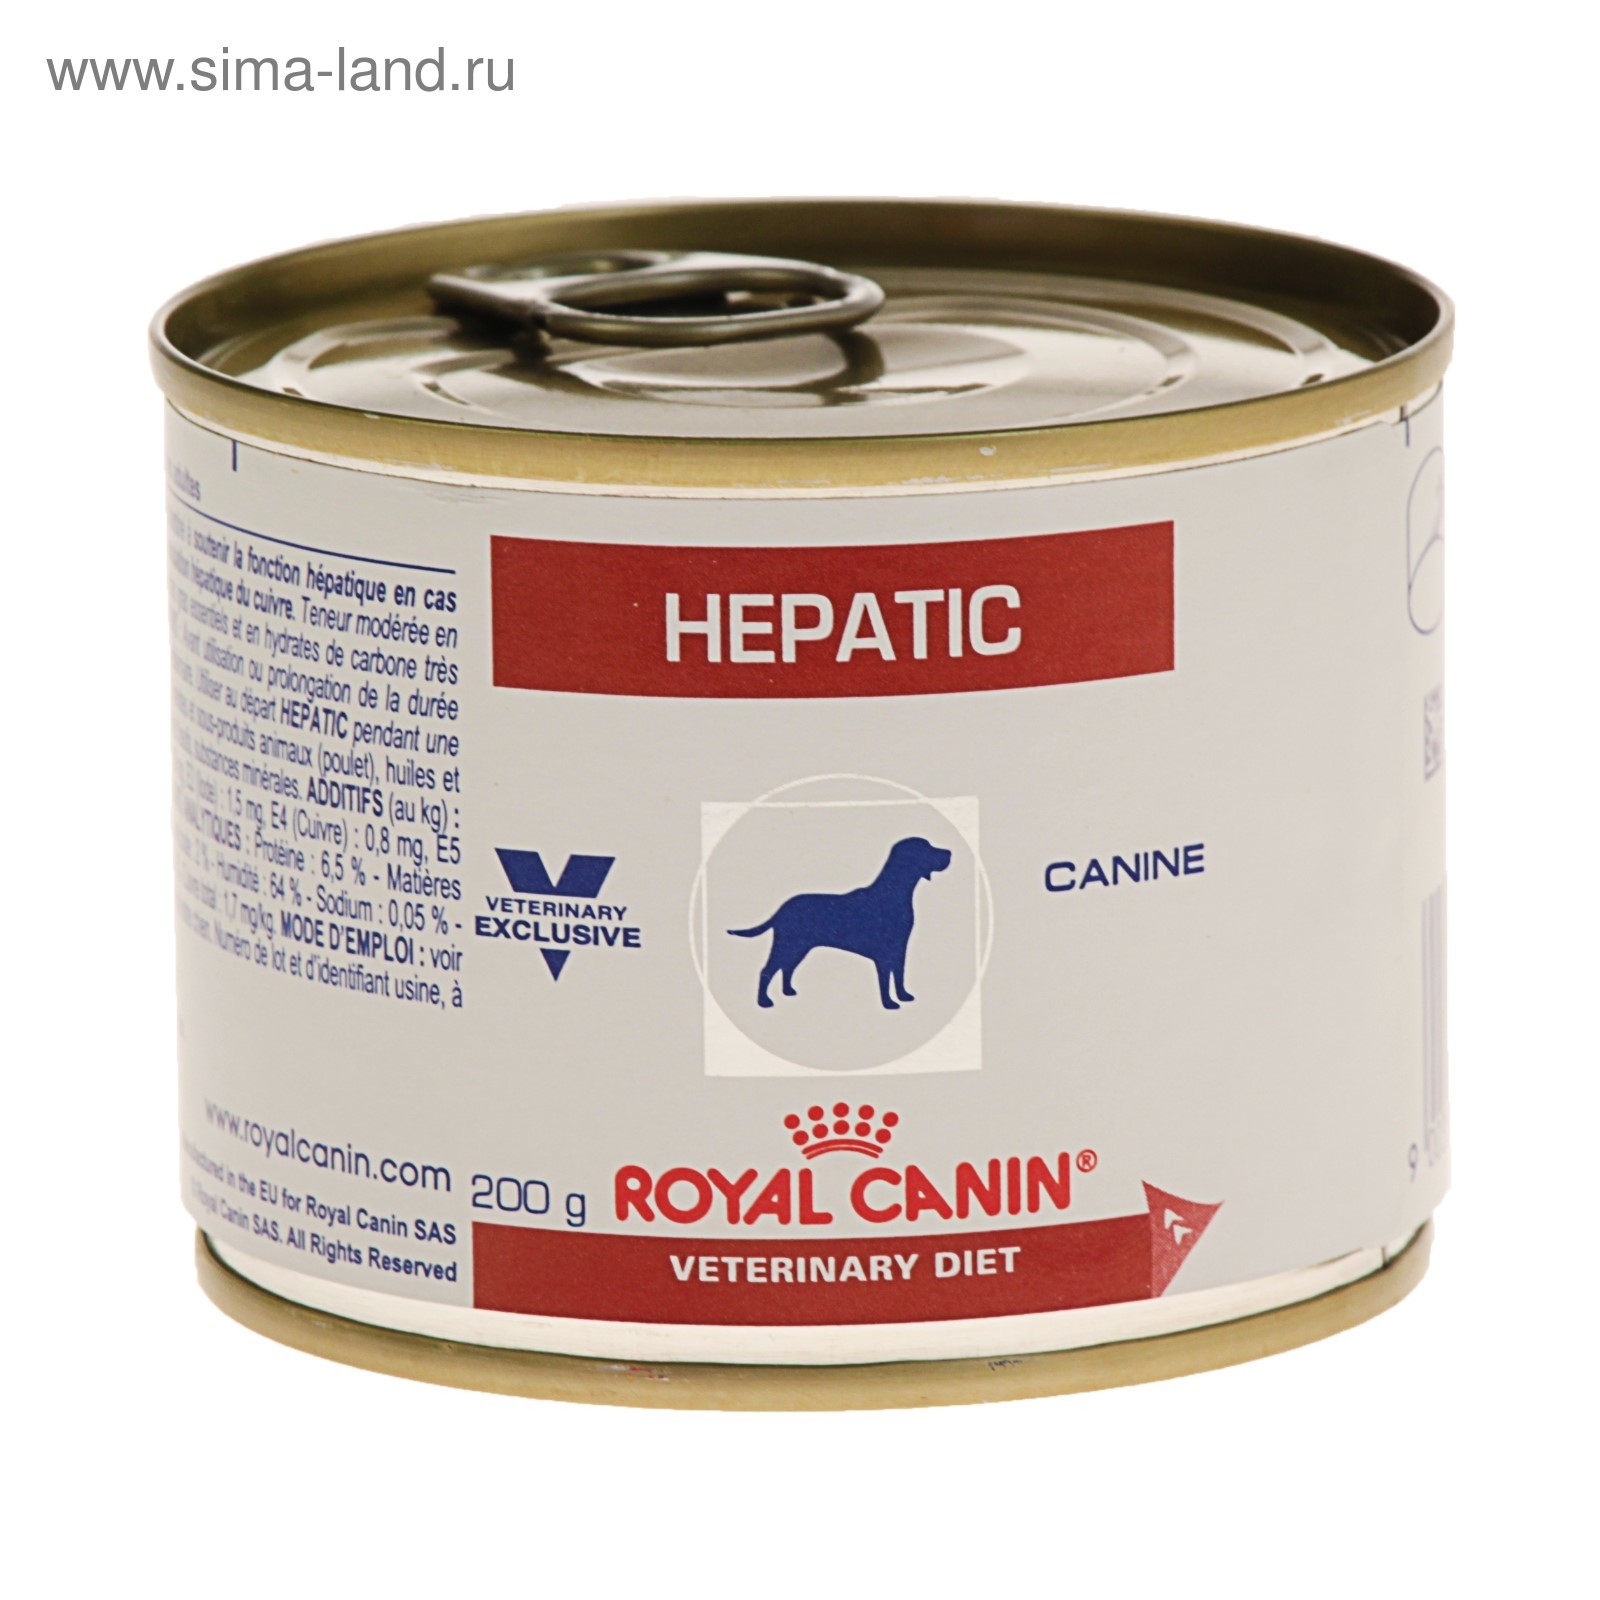 Корм hepatic для собак. Роял Канин Гепатик консервы. Роял Канин Гепатик для собак консервы. Royal Canin hepatic для собак консервы. Royal Canin Gastro intestinal для собак консервы.